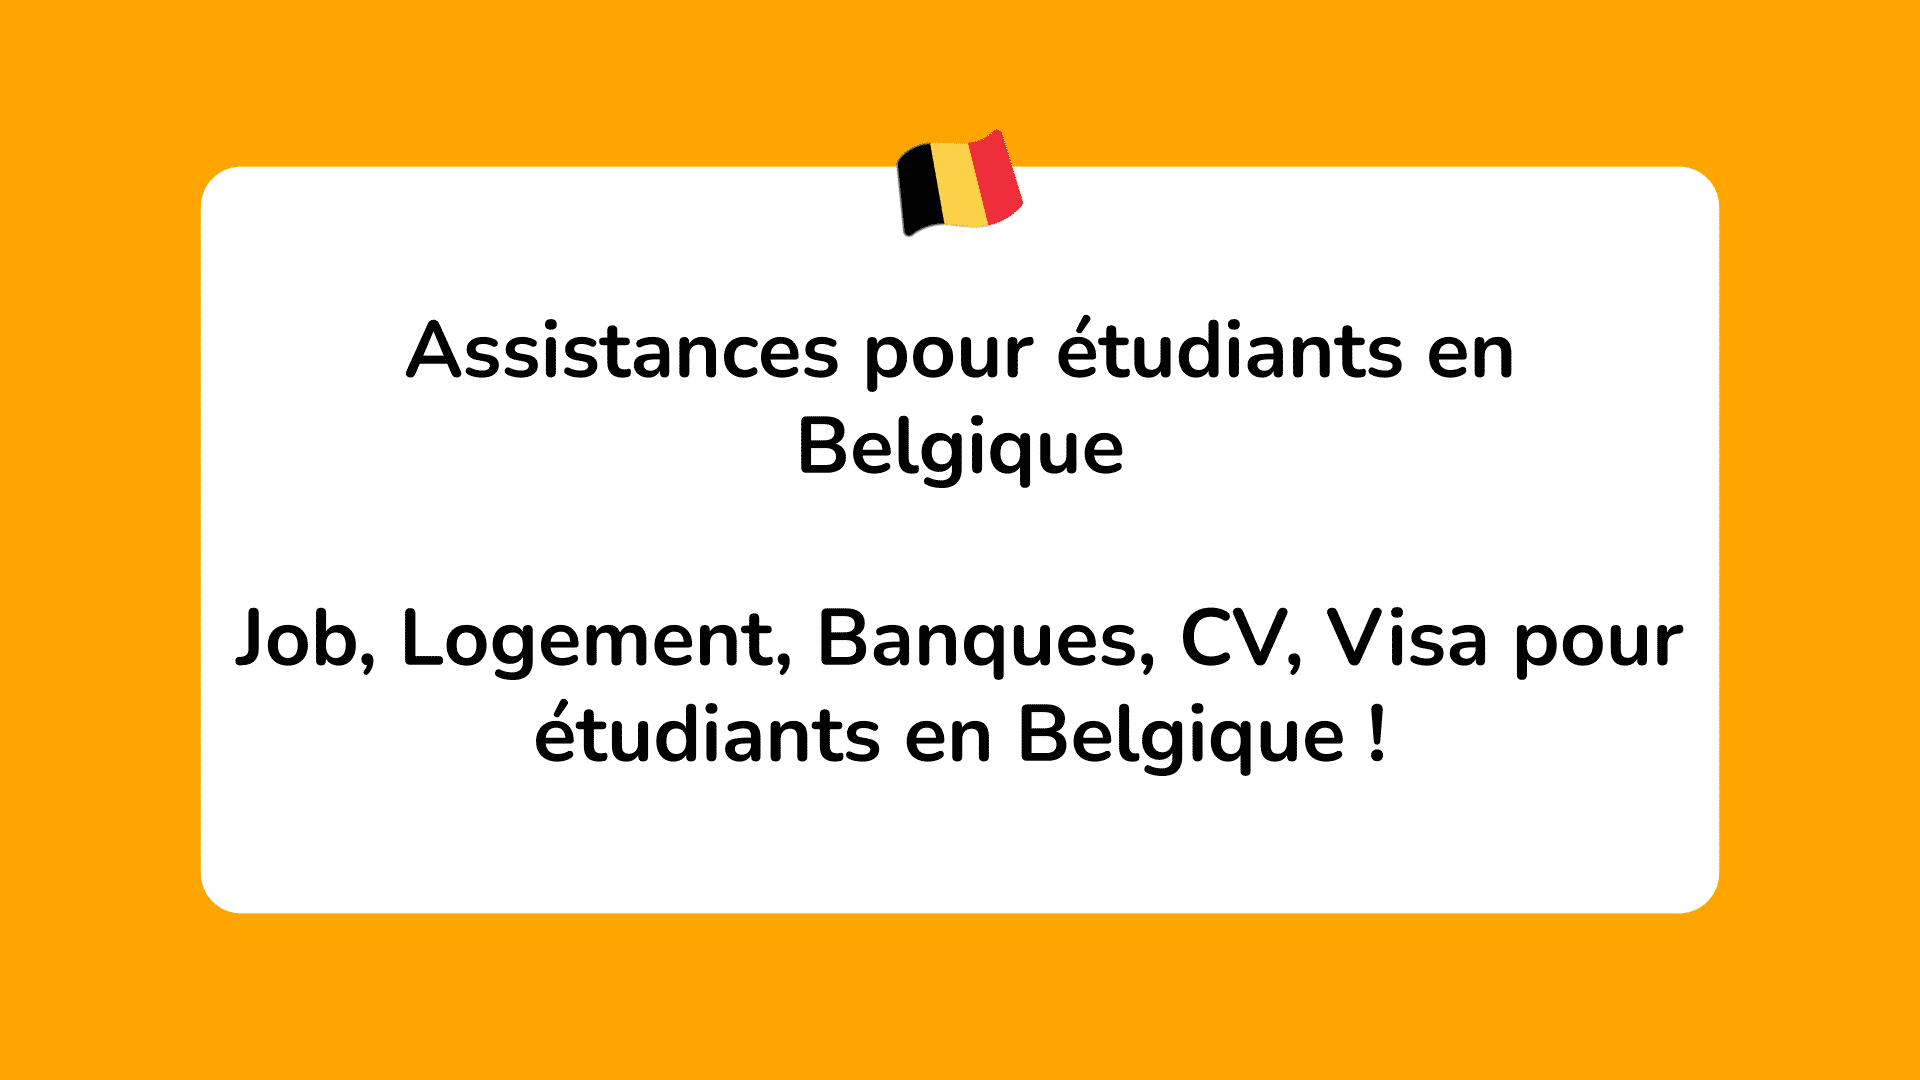 Assistances pour étudiants en Belgique - Job, Logement, Banques, CV, Visa !